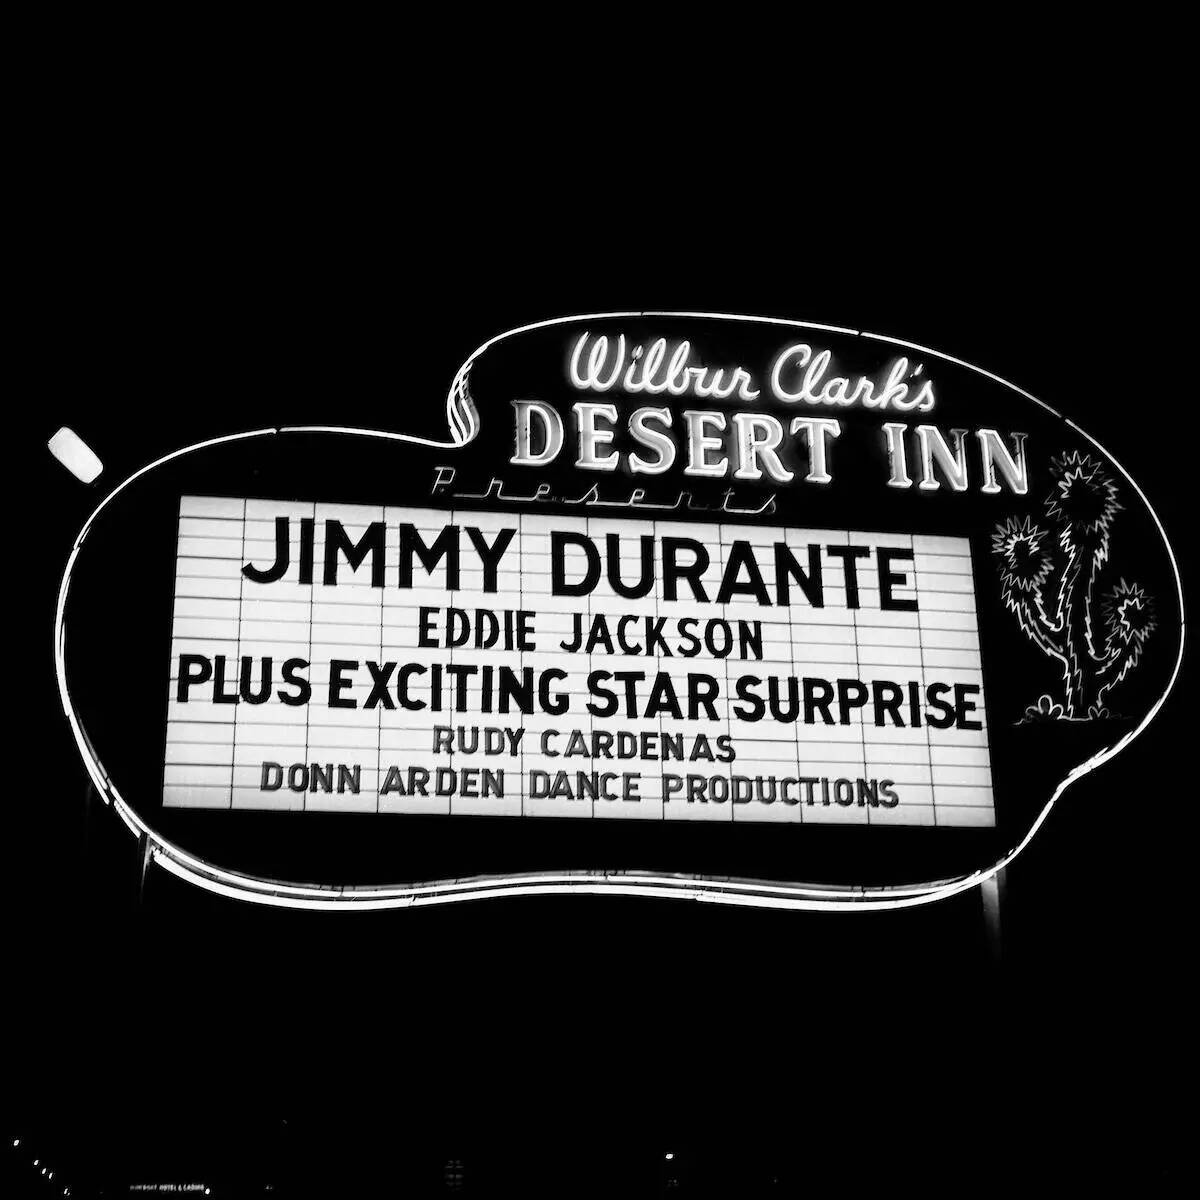 Una marquesina del Wilbur Clark's Desert Inn anunciando a Jimmy Durante y Eddie Jackson en Las ...